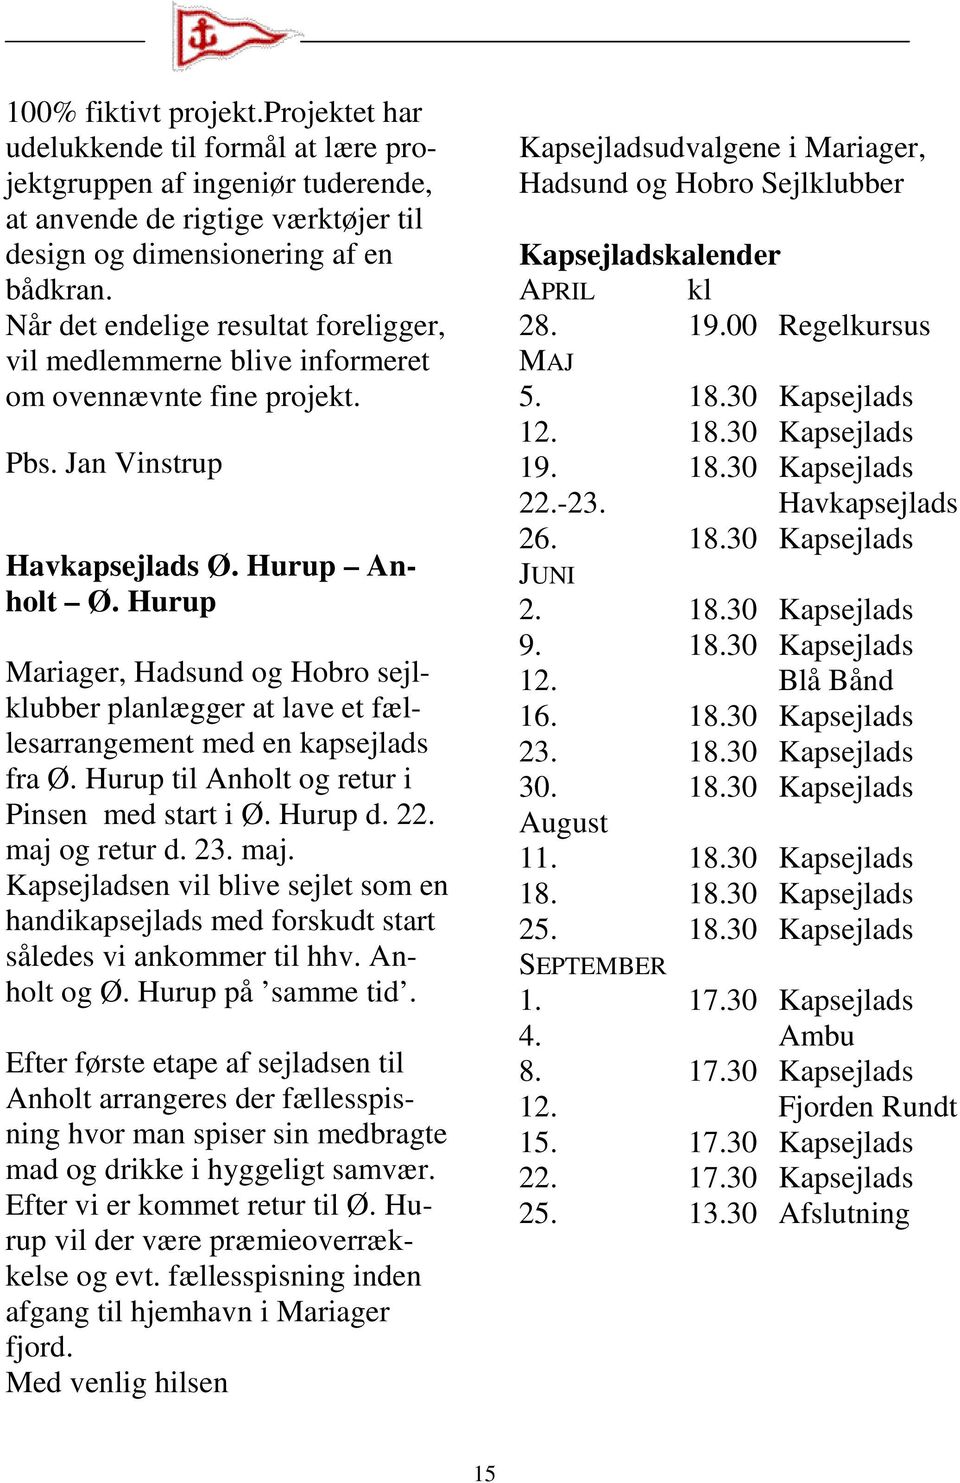 Hurup Mariager, Hadsund og Hobro sejlklubber planlægger at lave et fællesarrangement med en kapsejlads fra Ø. Hurup til Anholt og retur i Pinsen med start i Ø. Hurup d. 22. maj 